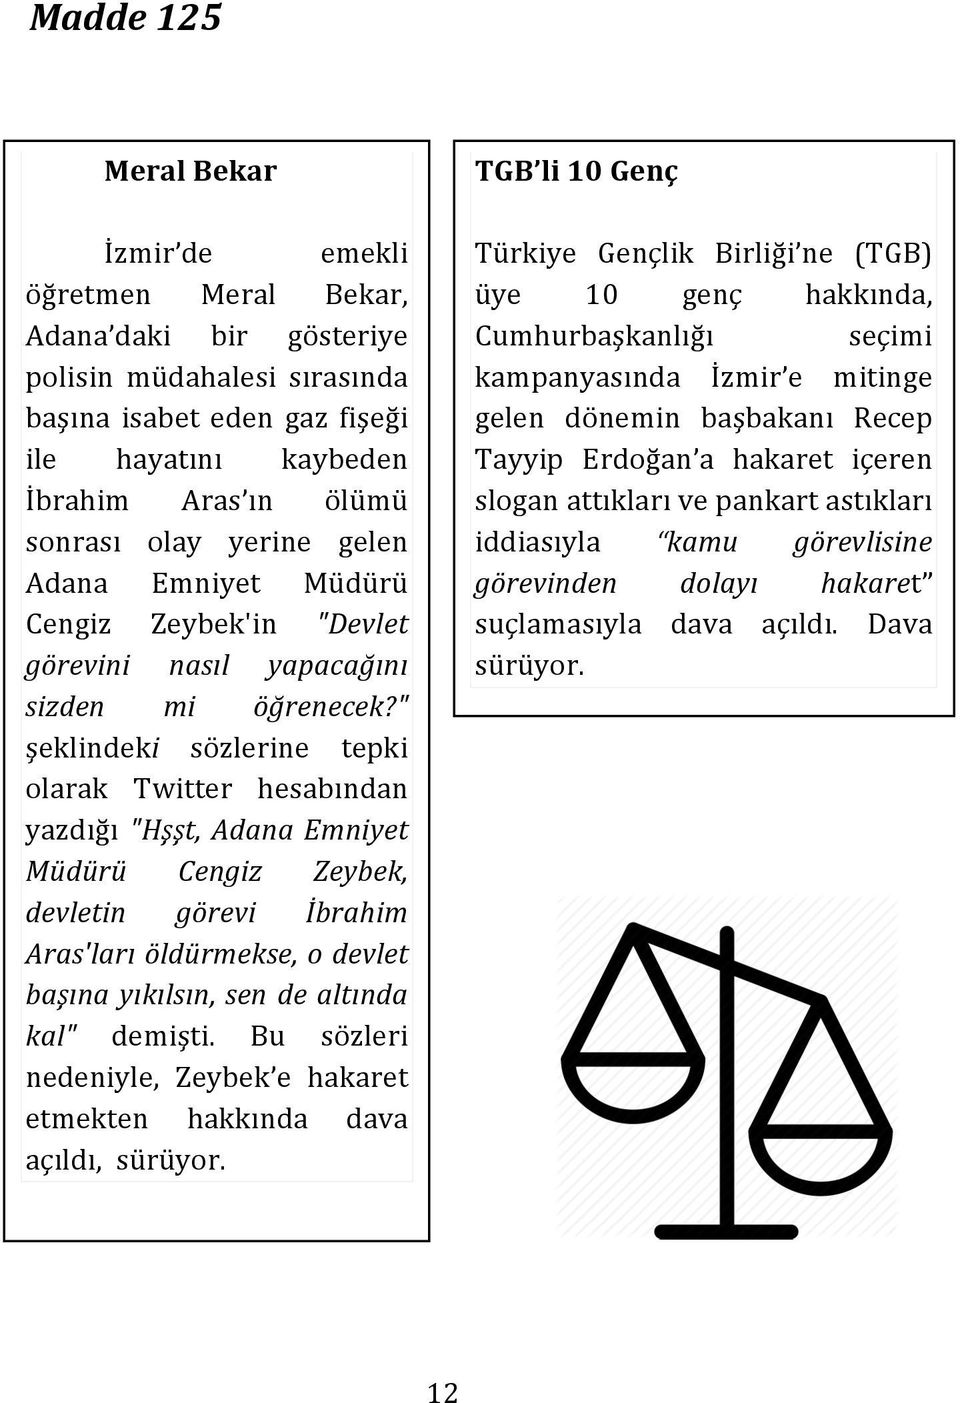 " şeklindeki sözlerine tepki olarak Twitter hesabından yazdığı "Hşşt, Adana Emniyet Müdürü Cengiz Zeybek, devletin görevi İbrahim Aras'ları öldürmekse, o devlet başına yıkılsın, sen de altında kal"